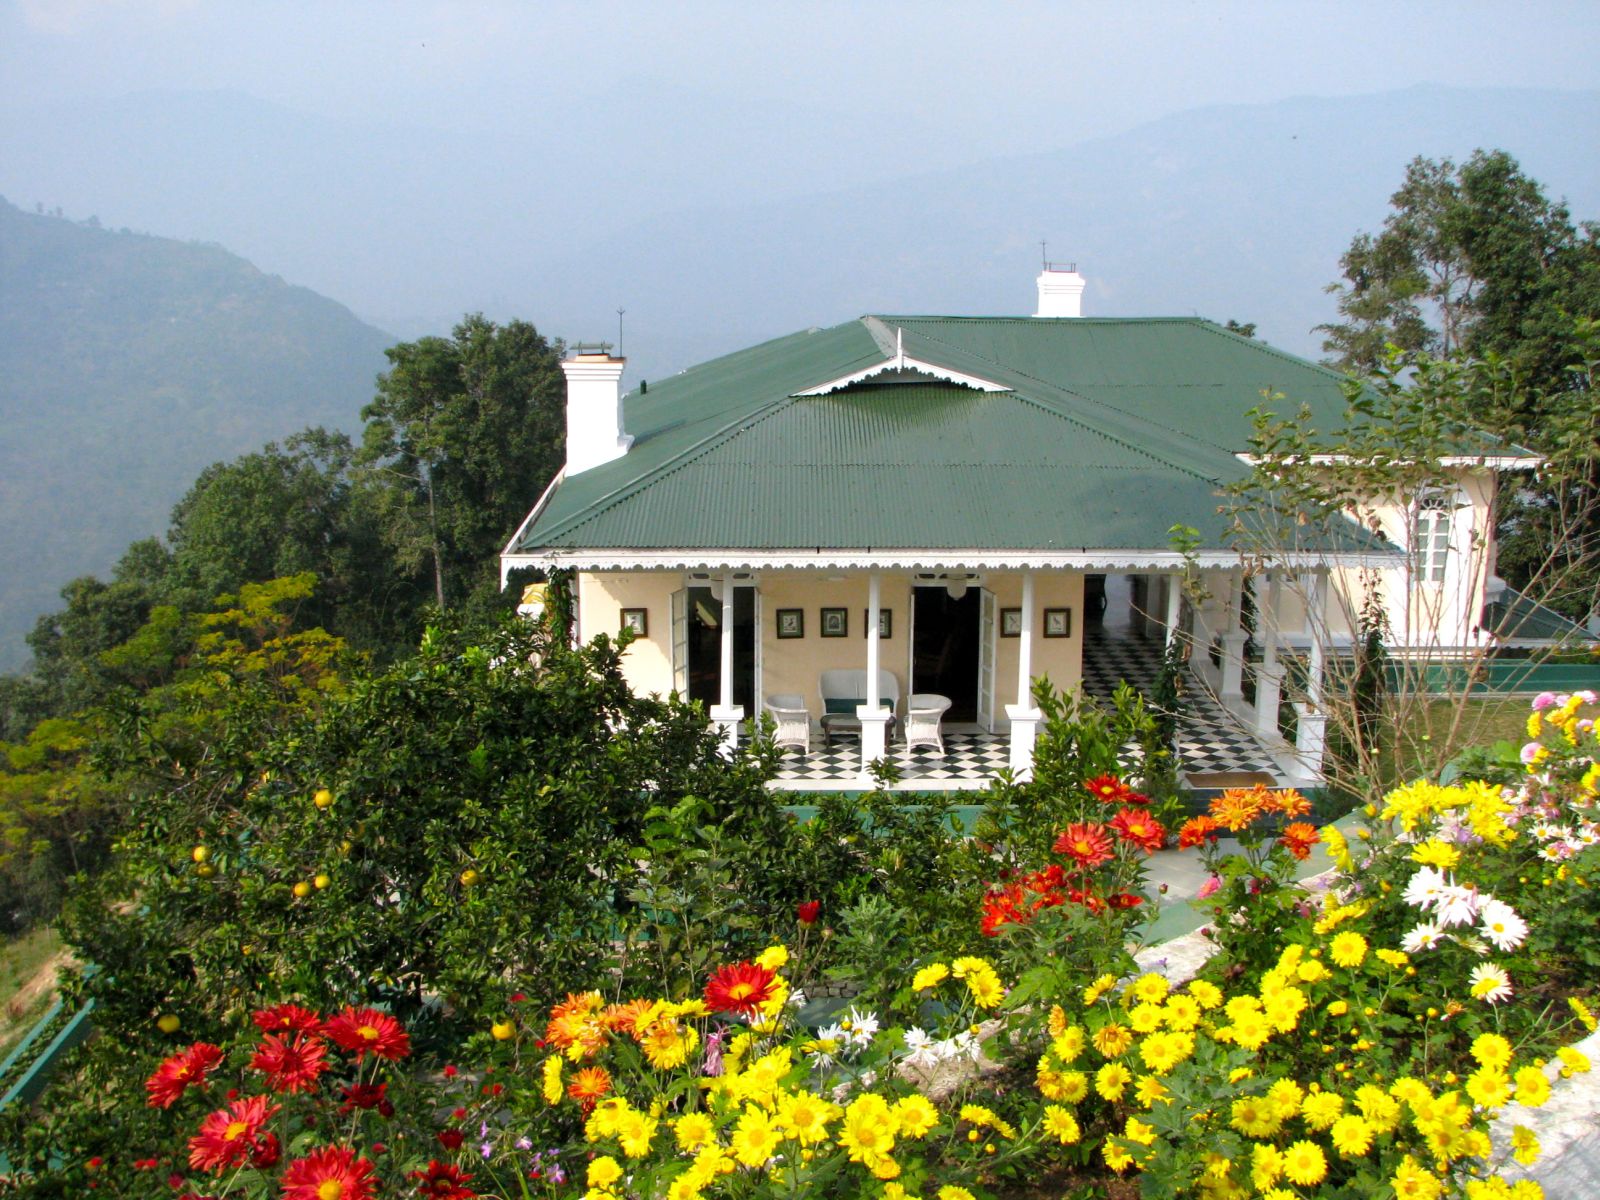 Gardens of the Glenburn Tea Estate in Darjeeling India